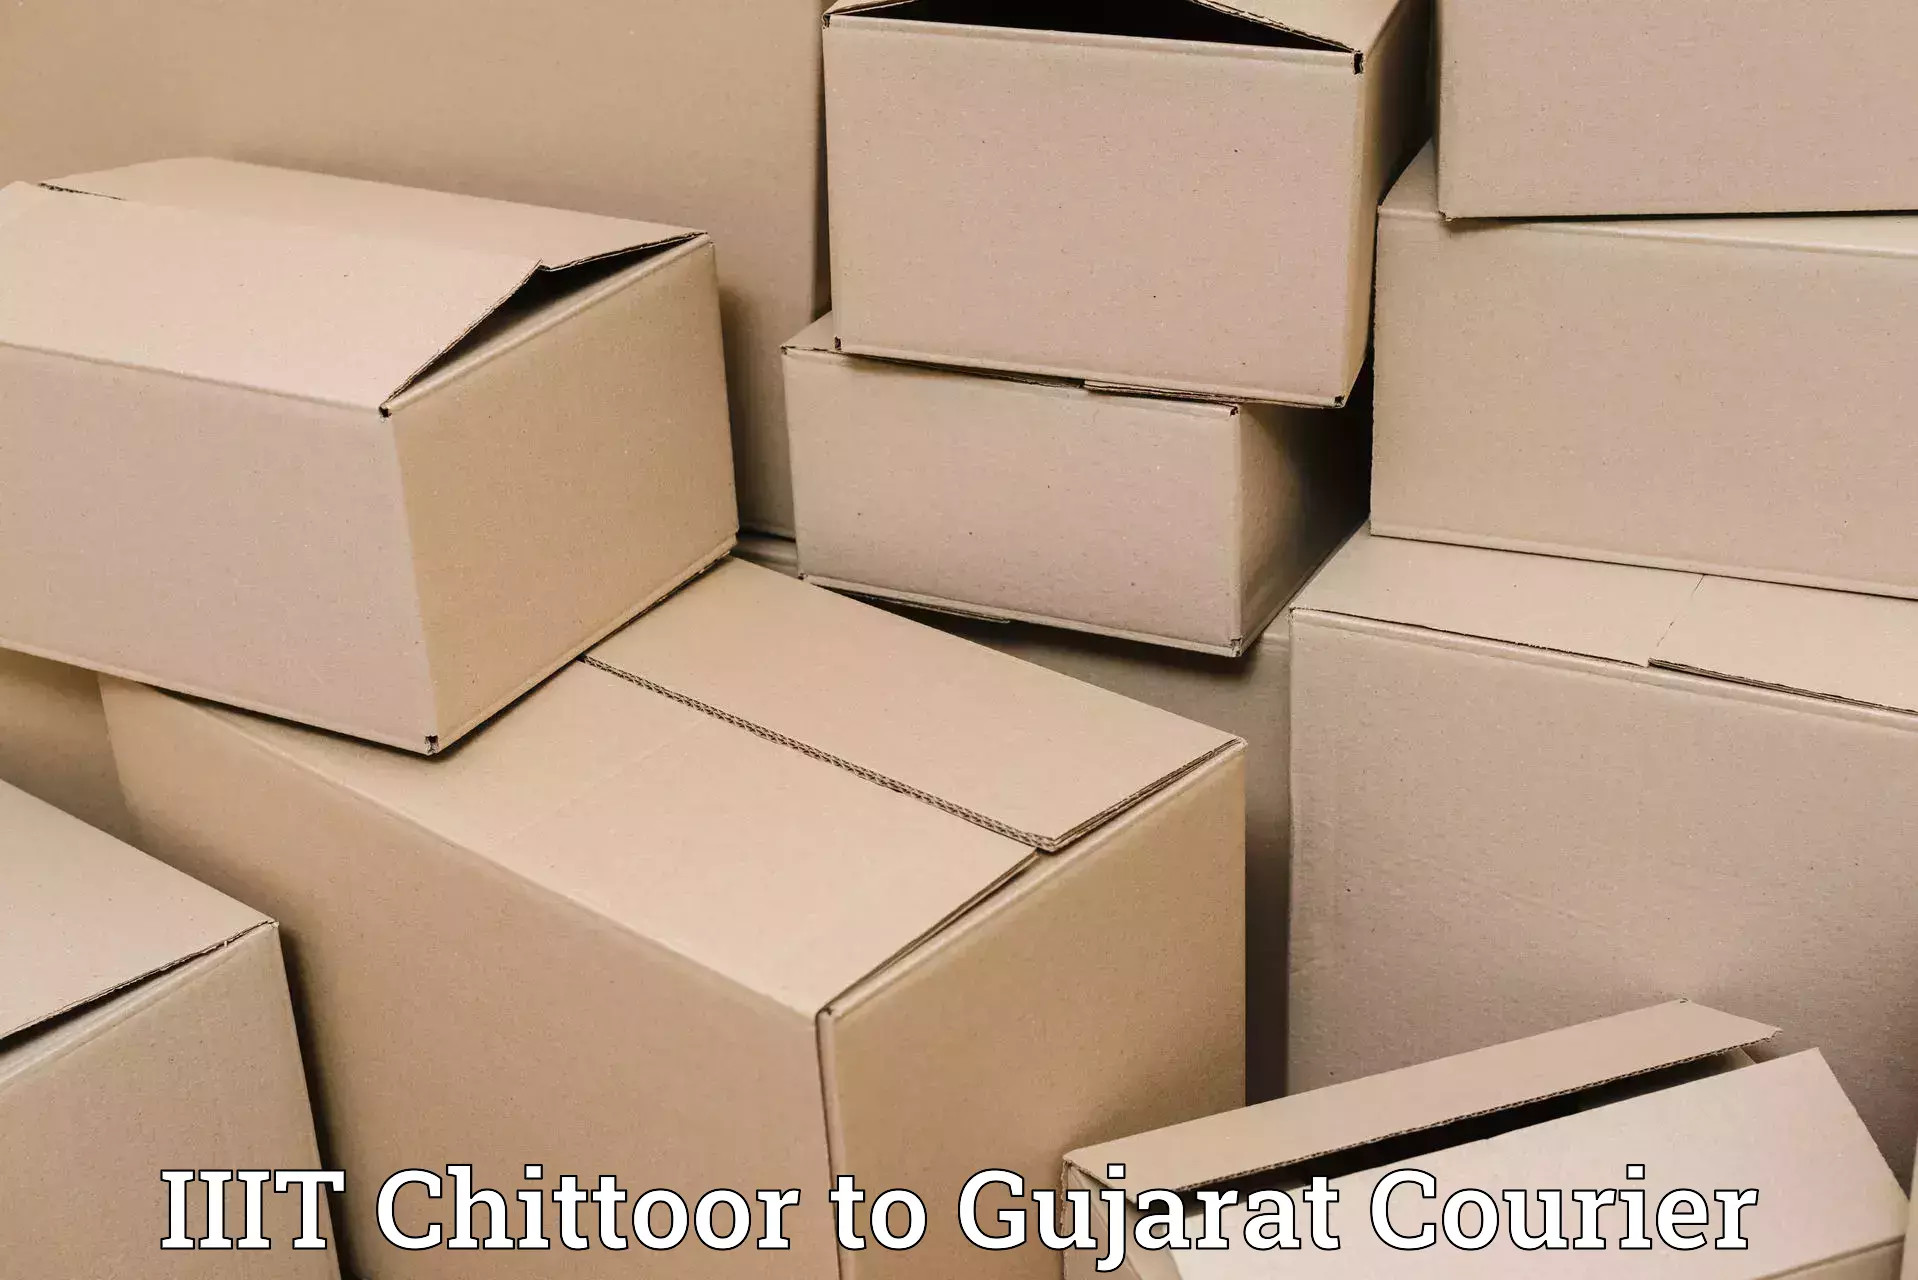 Efficient freight service IIIT Chittoor to Visavadar